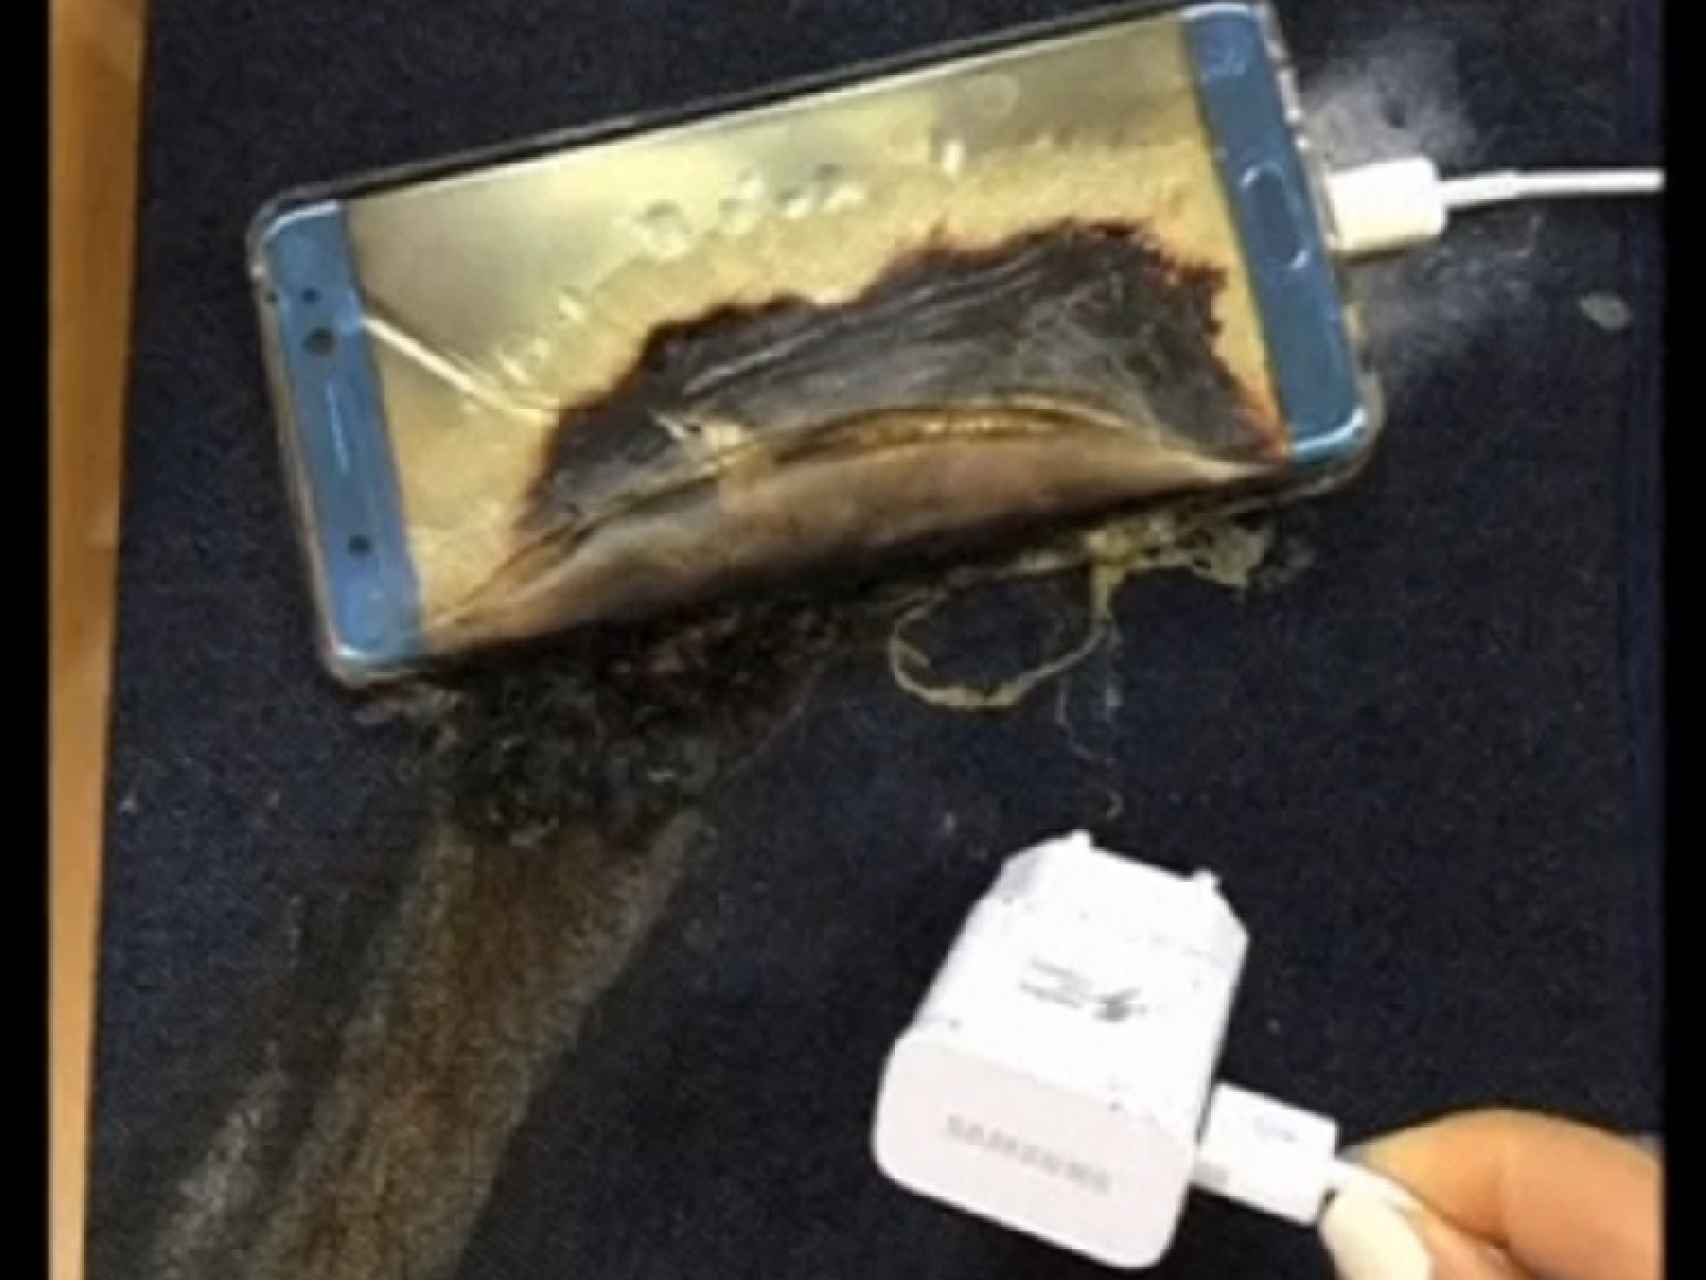 Uno de los nuevos Galaxy Note 7 tras haber explotado.